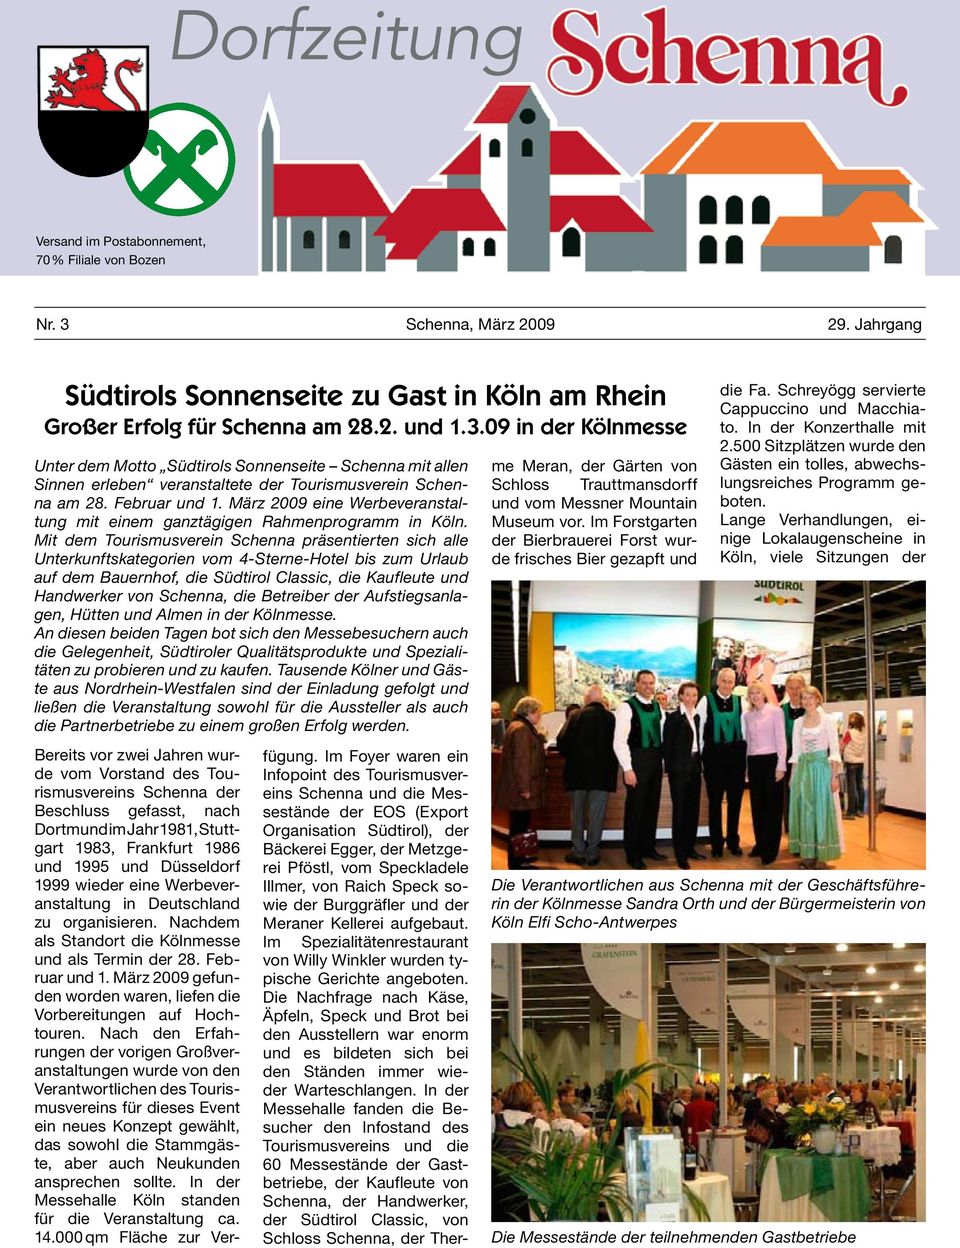 09 in der Kölnmesse Unter dem Motto Südtirols Sonnenseite Schenna mit allen Sinnen erleben veranstaltete der Tourismusverein Schenna am 28. Februar und 1.